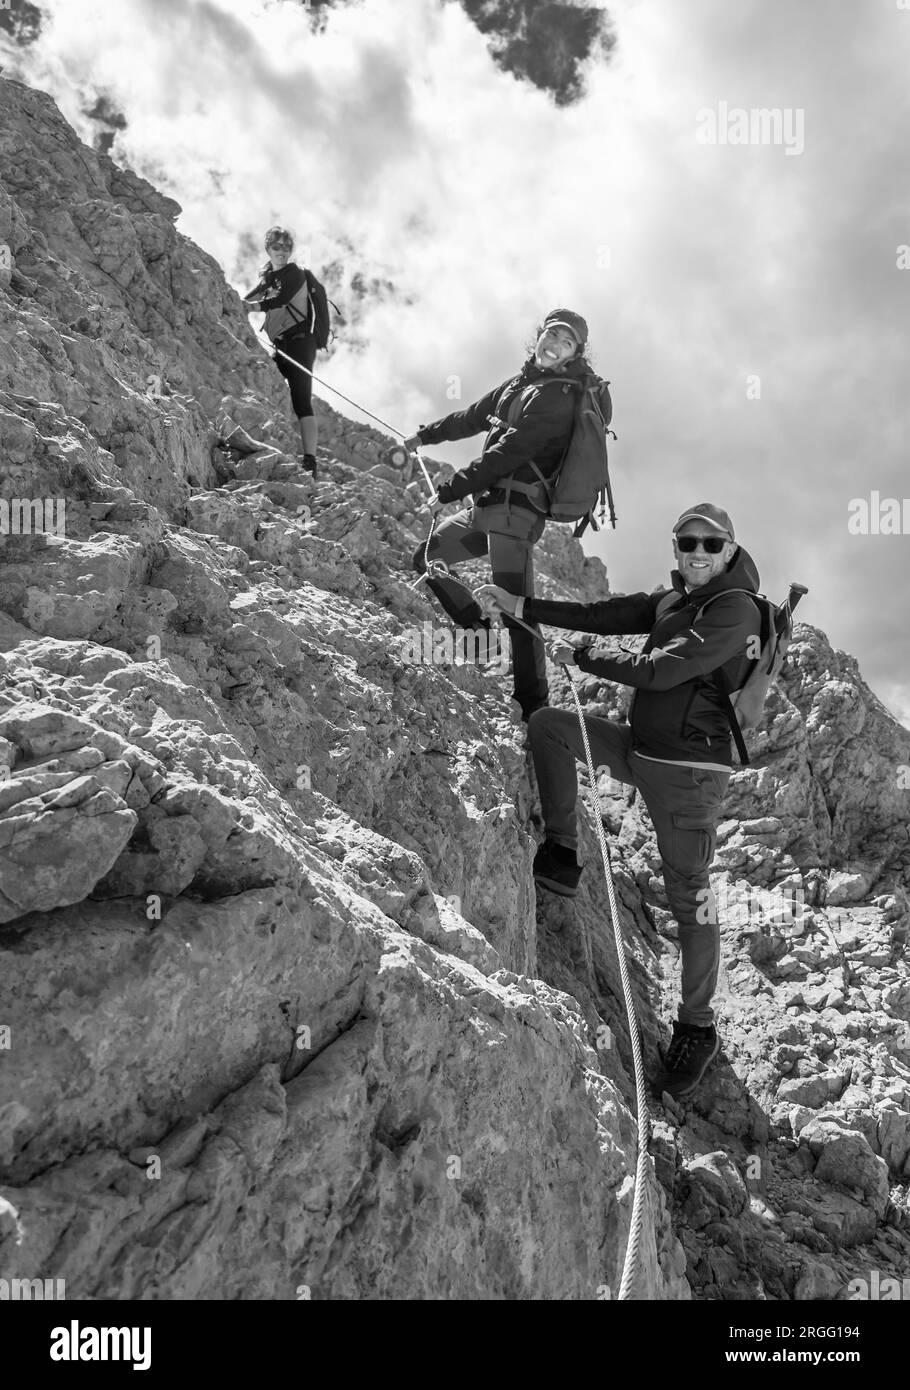 Gran Sasso, Italy - The alpinistic way to Vetta Occidentale of Corno Grande, 2912 meters in Abruzzo region, named Via delle Creste or Cresta Ovest. Stock Photo